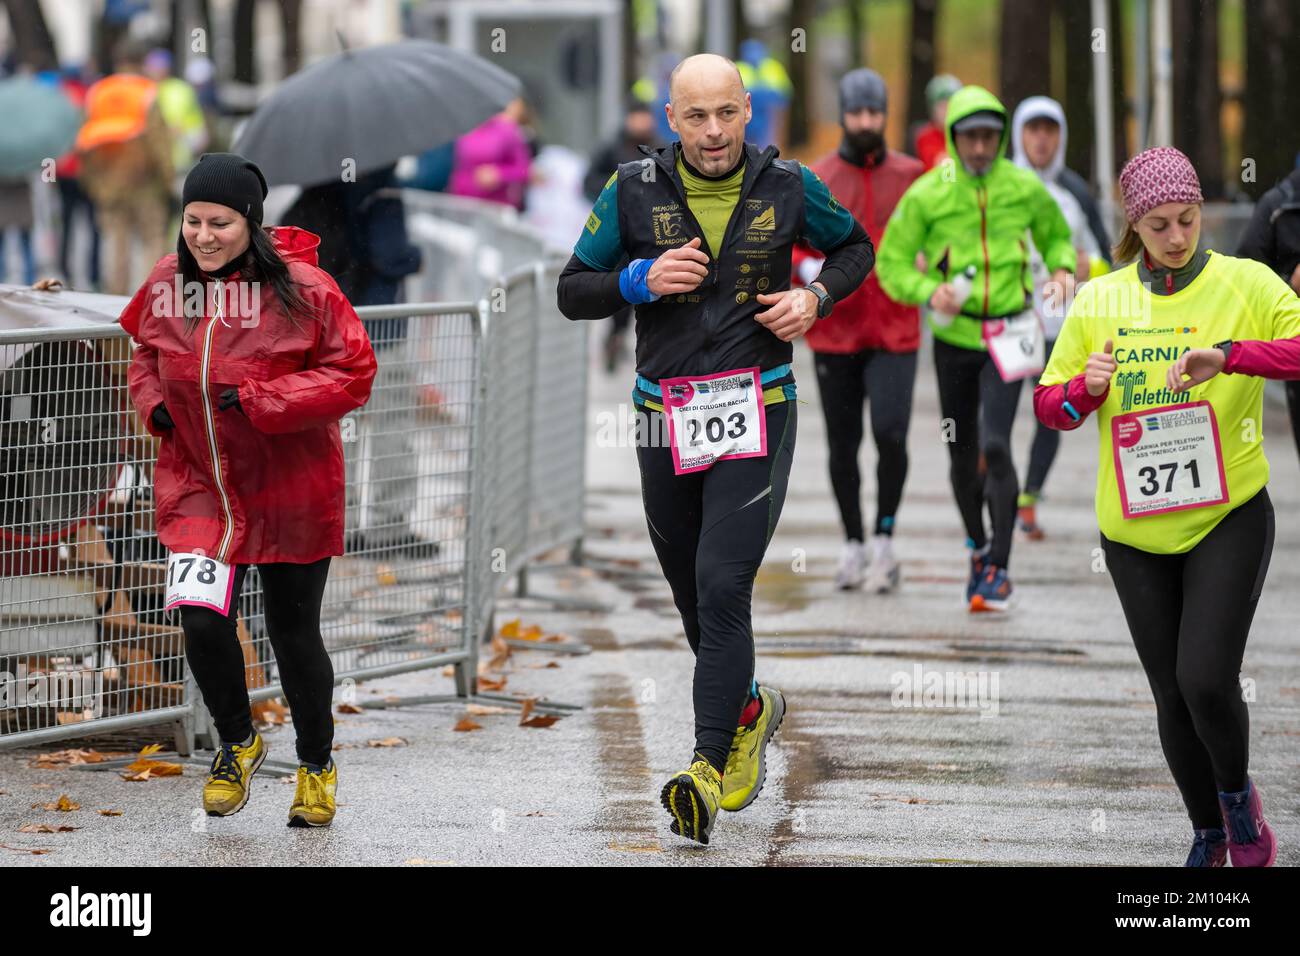 Les athlètes qui s'entraînent sous la pluie à l'occasion de la course de relais de marathon de Téléthon. Udine ville, Italie. 4 décembre 2022. Banque D'Images